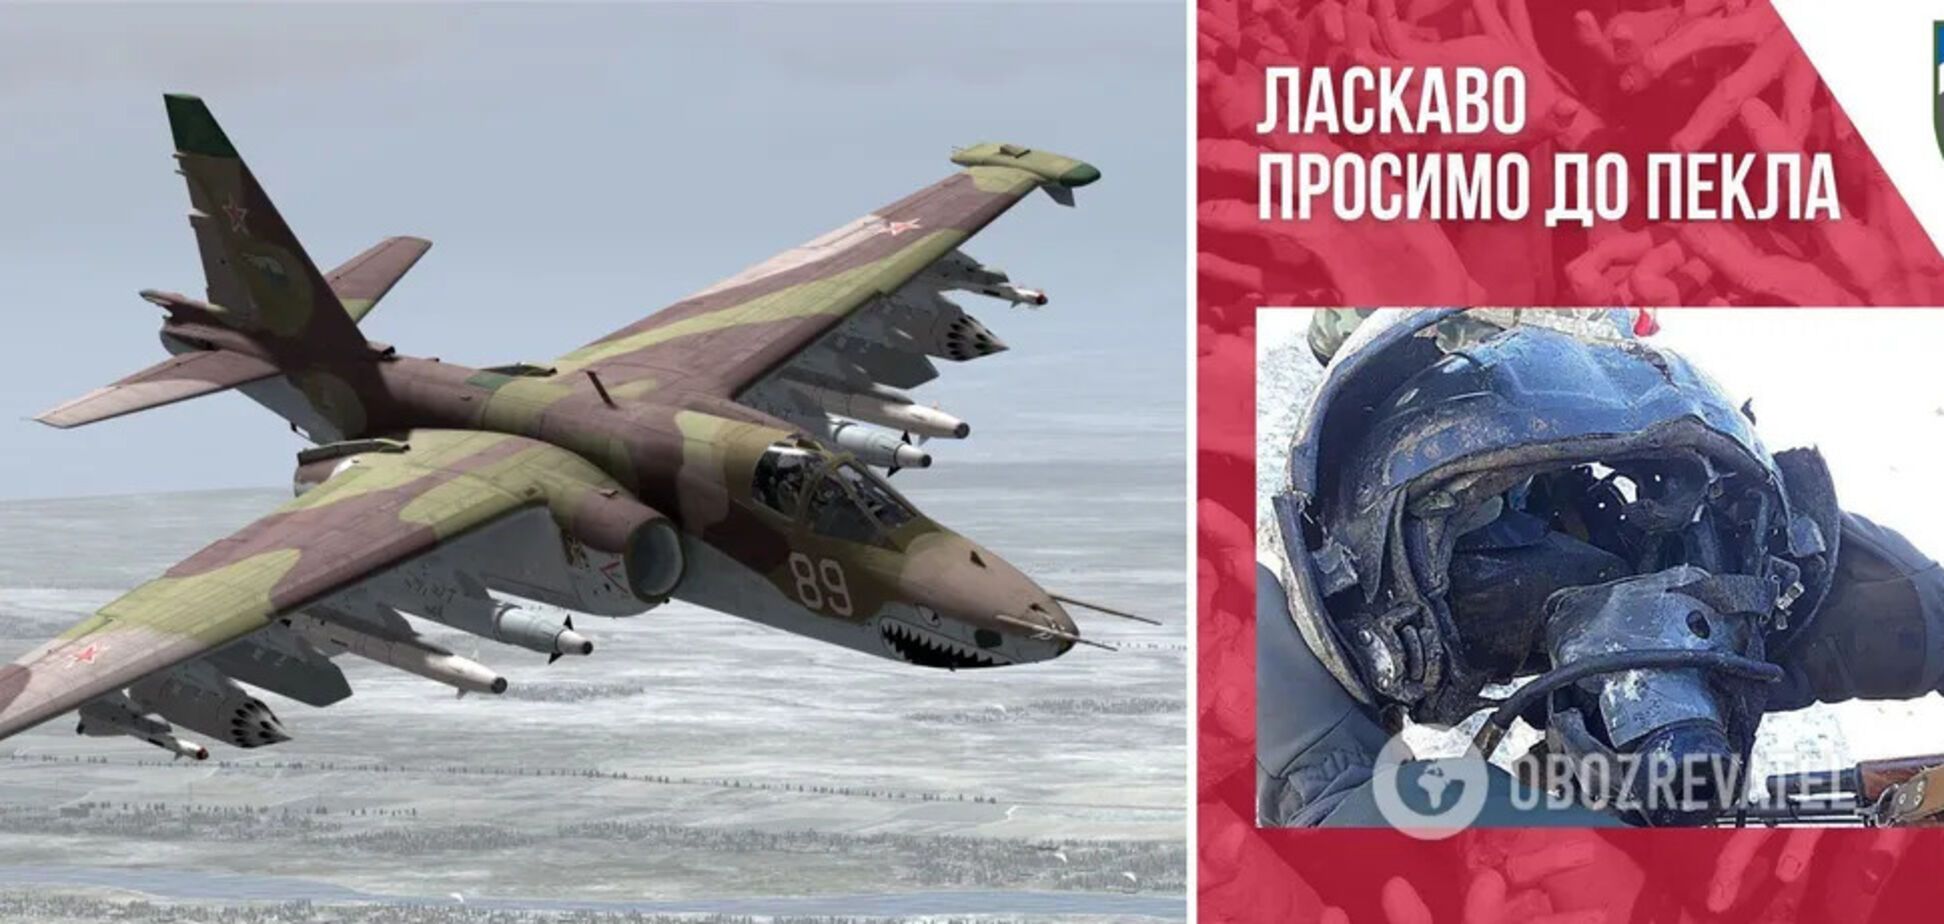 'Не щадим врагов ни на земле, ни в небе': украинские военные отчитались об уничтожении российского Су-25